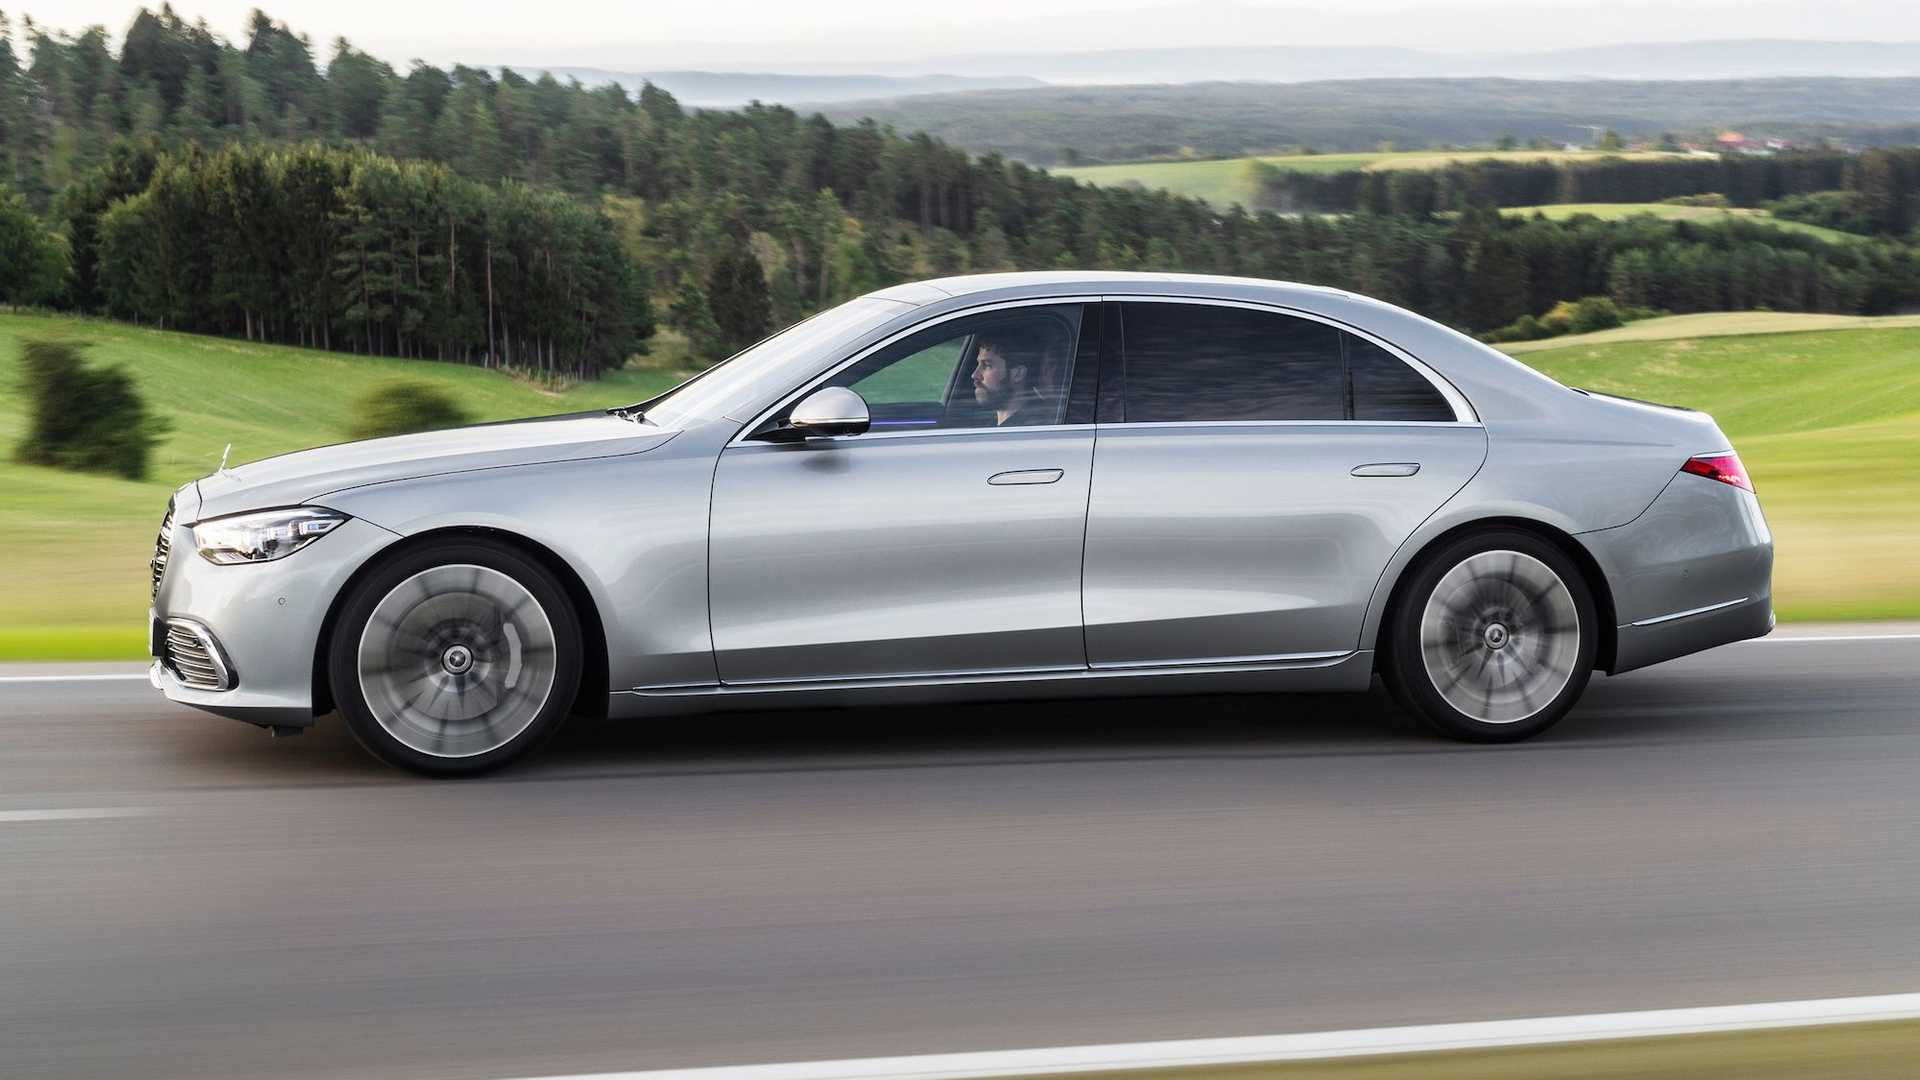 Mercedes доволни от повишеното търсене на луксозни коли